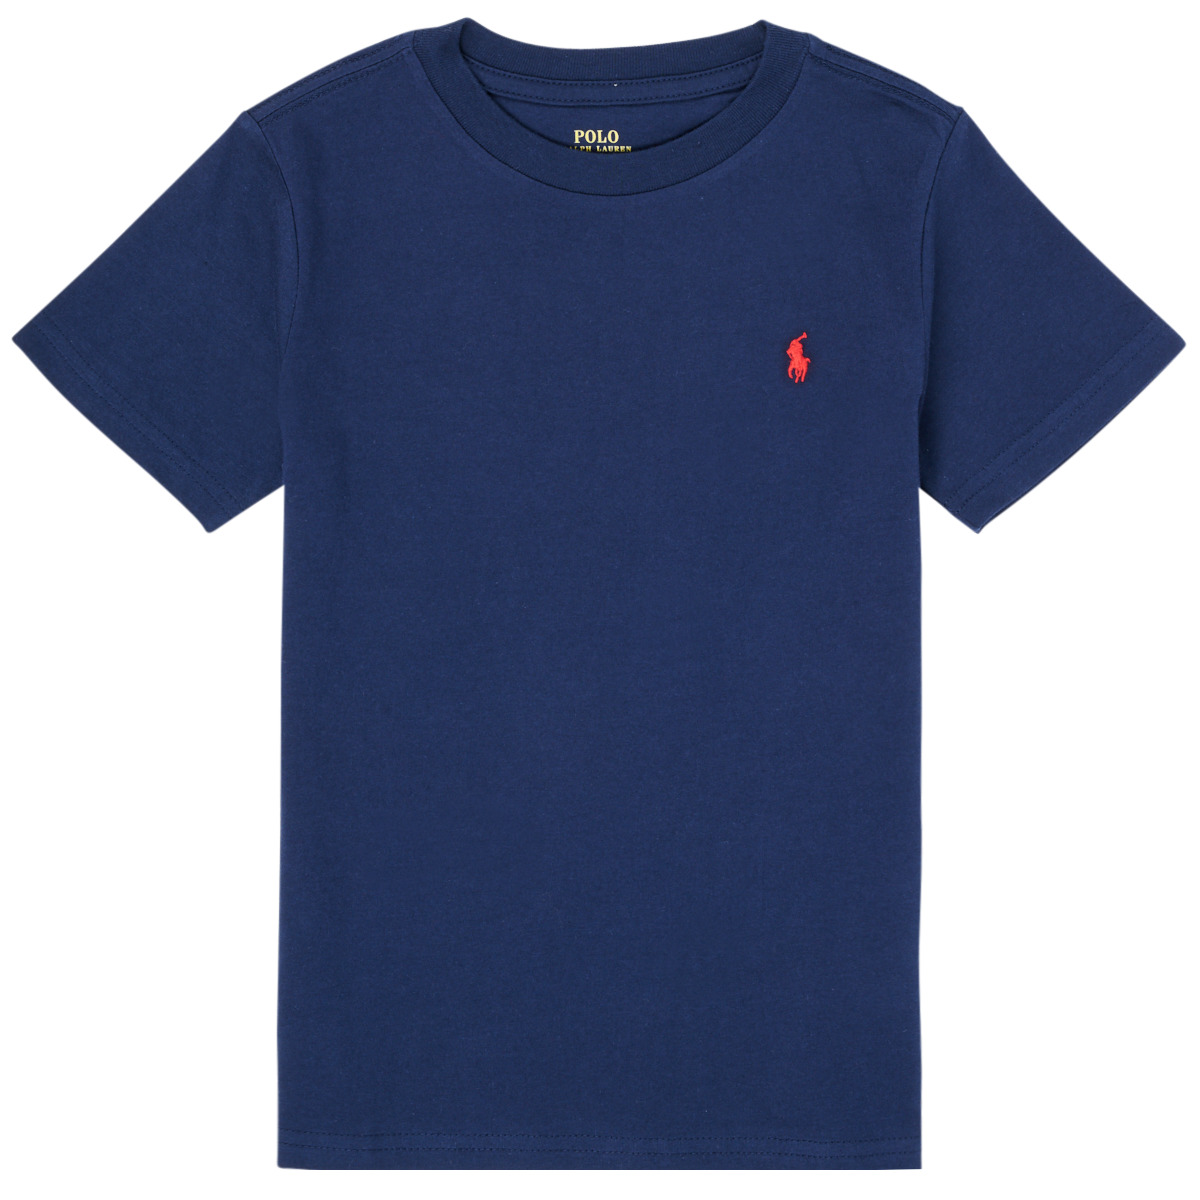 Textil Děti Trička s krátkým rukávem Polo Ralph Lauren TINNA Tmavě modrá